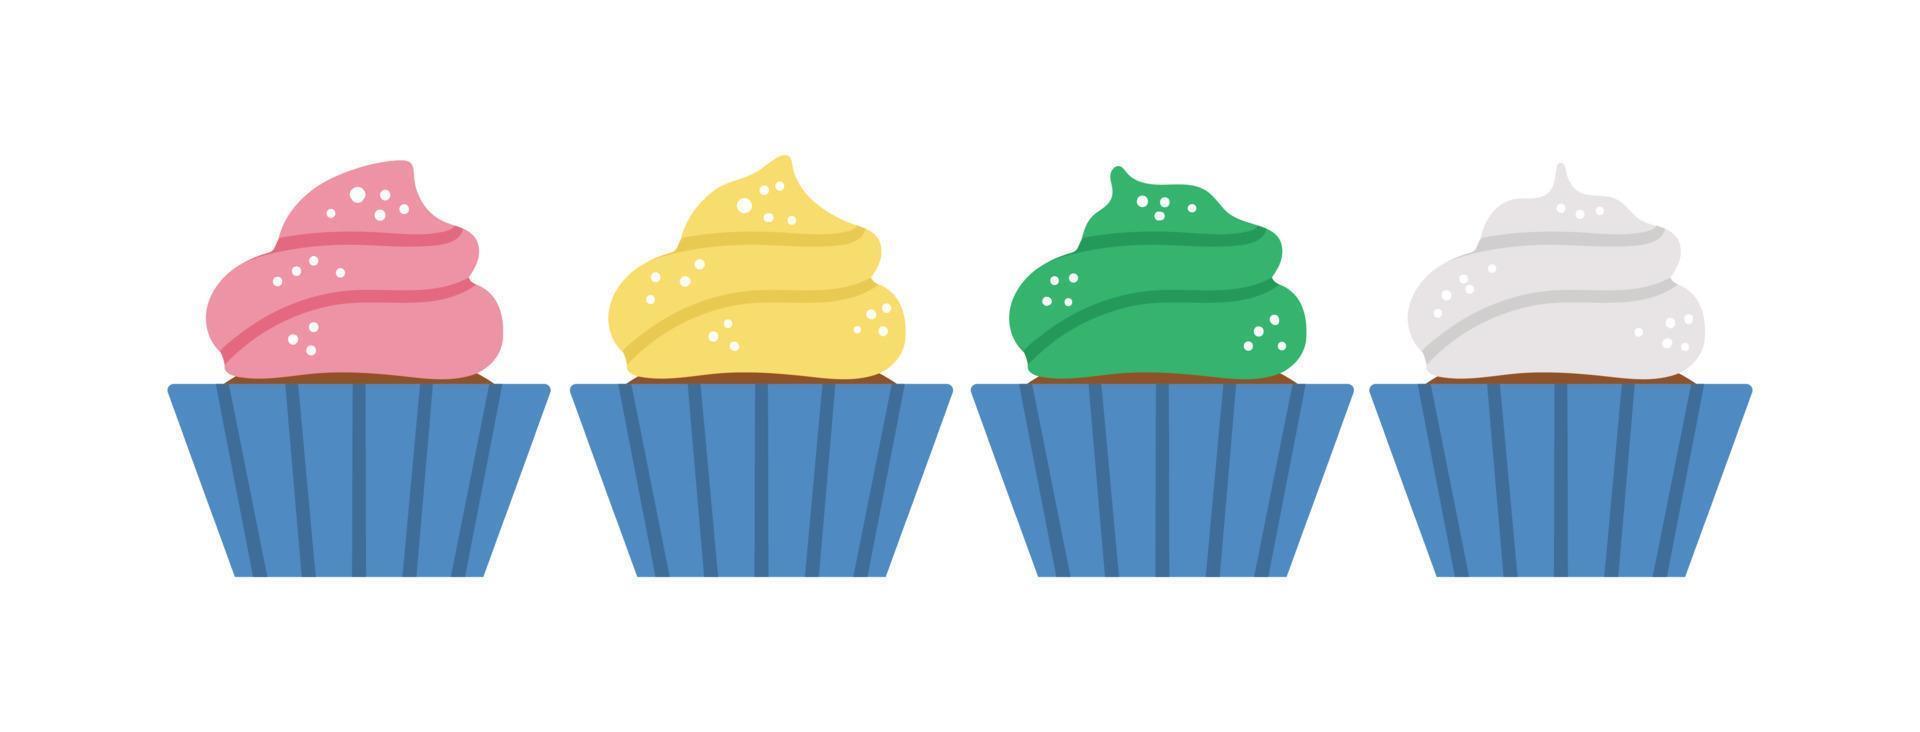 Vektor-Geburtstags-Desserts. niedliche lustige feier cupcakes illustration für karte, plakat, druckdesign. helles ferienkonzept für kinder mit vielen farbigen muffins. vektor